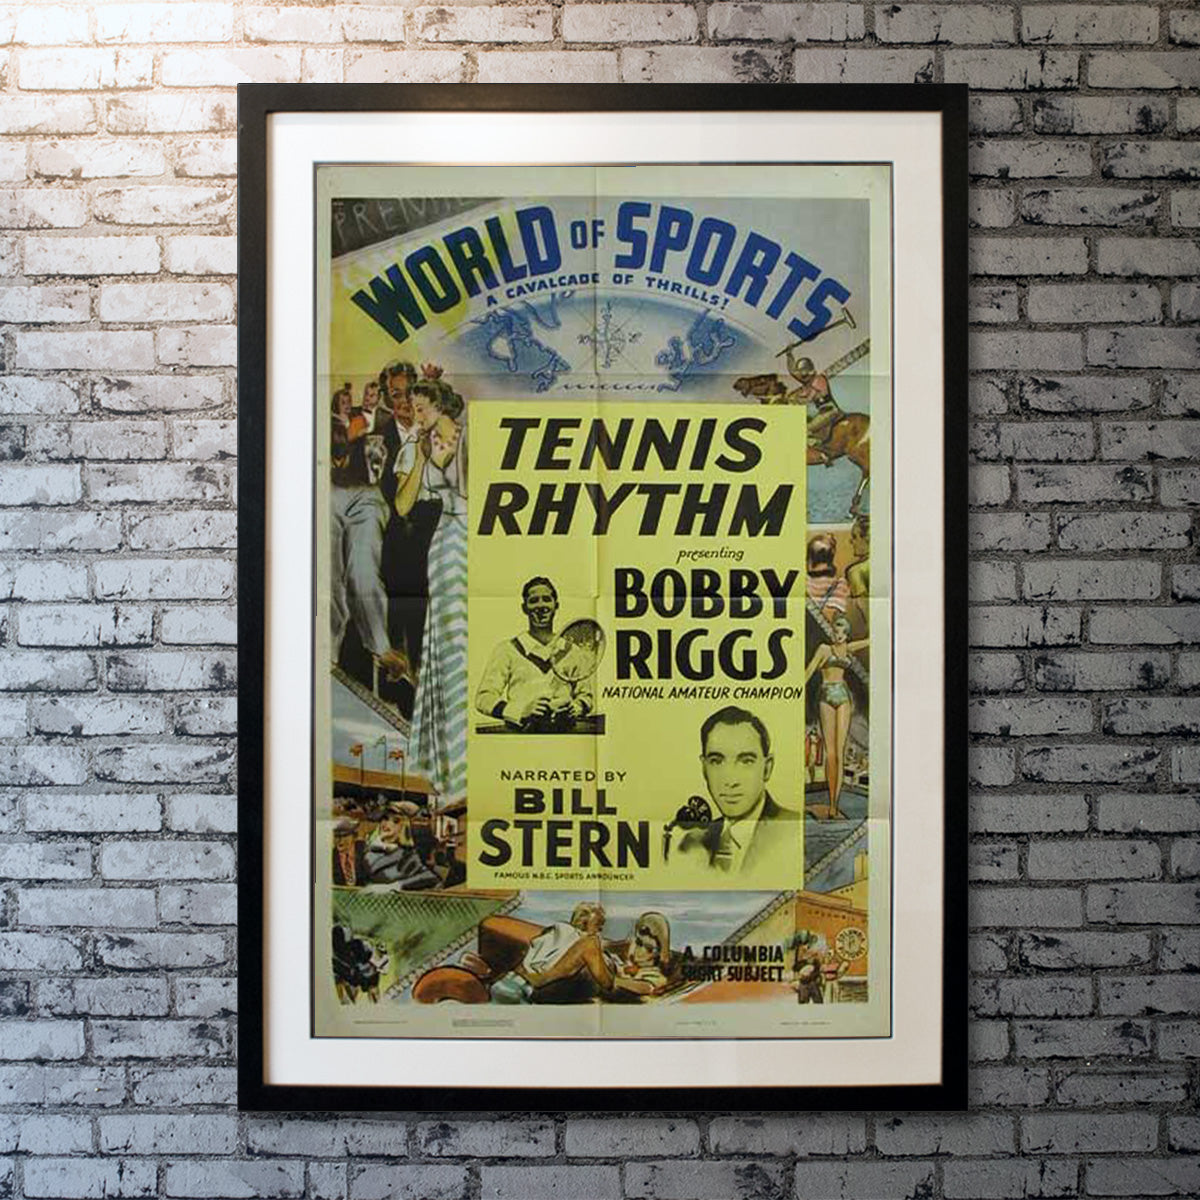 World of Sports - Tennis Rhythm (1949)